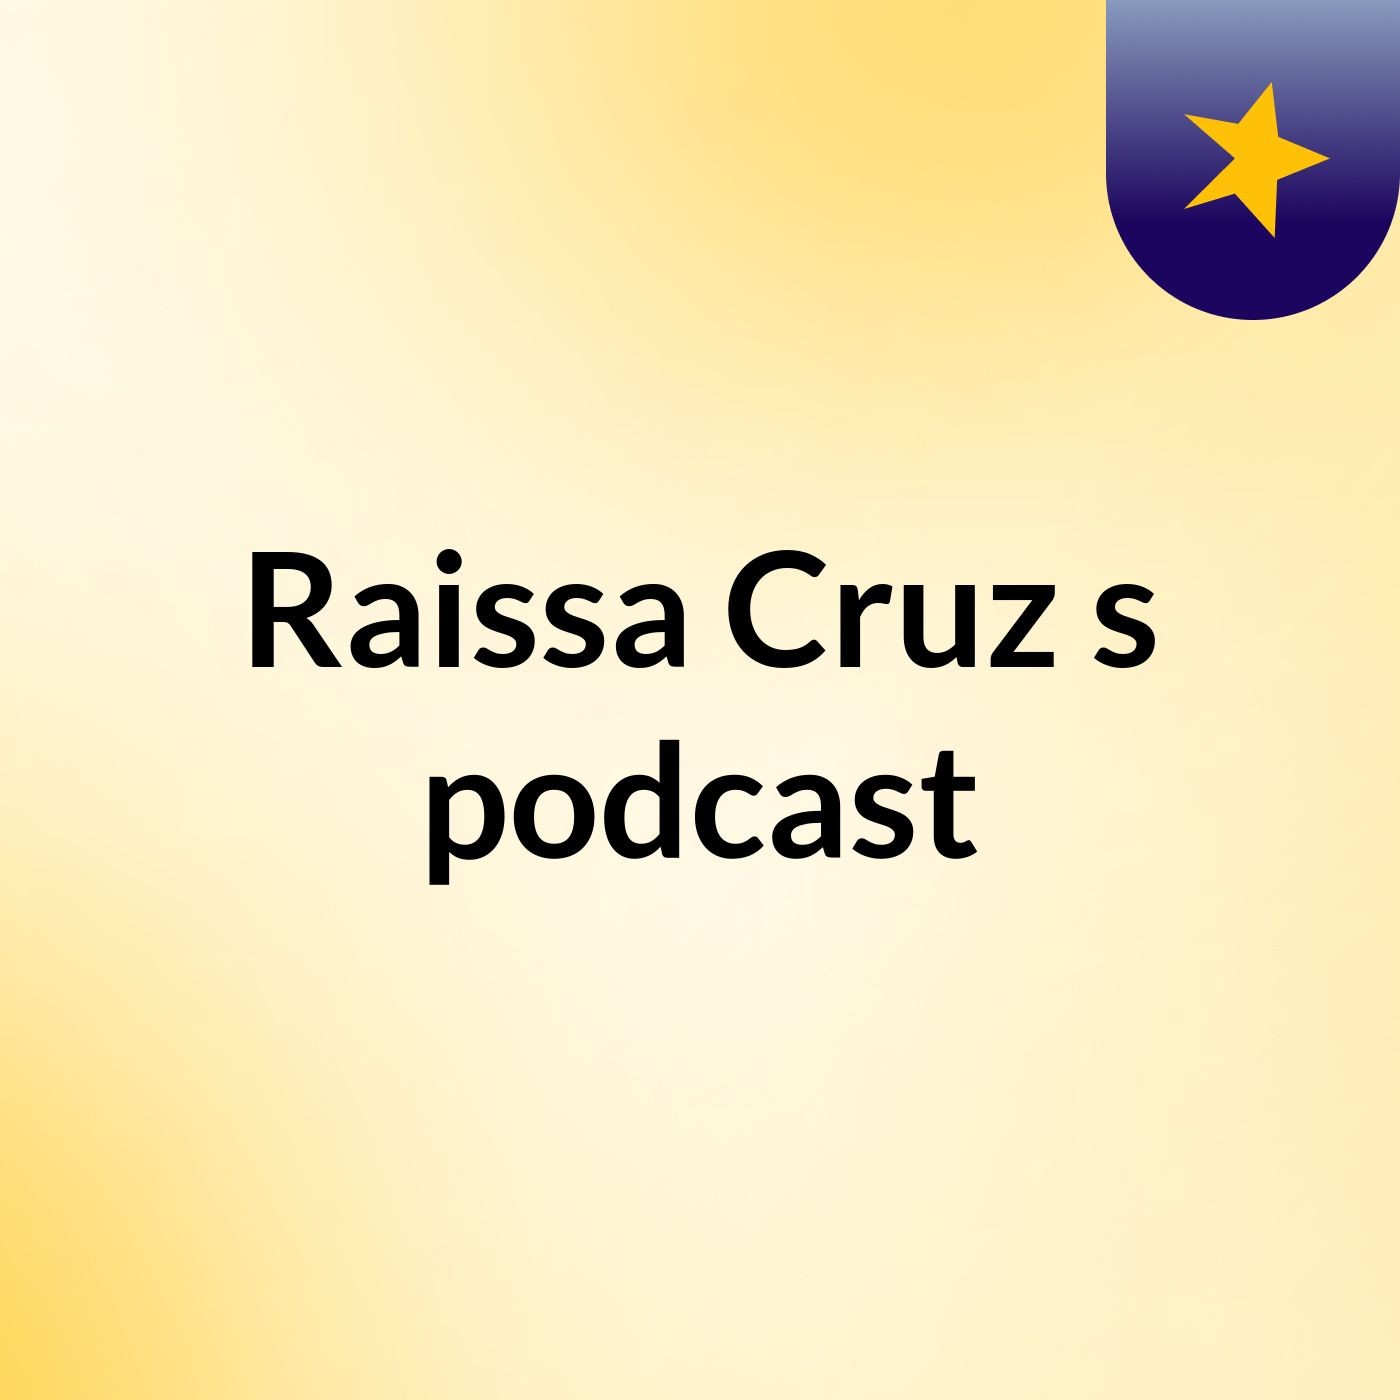 Raissa Cruz's podcast